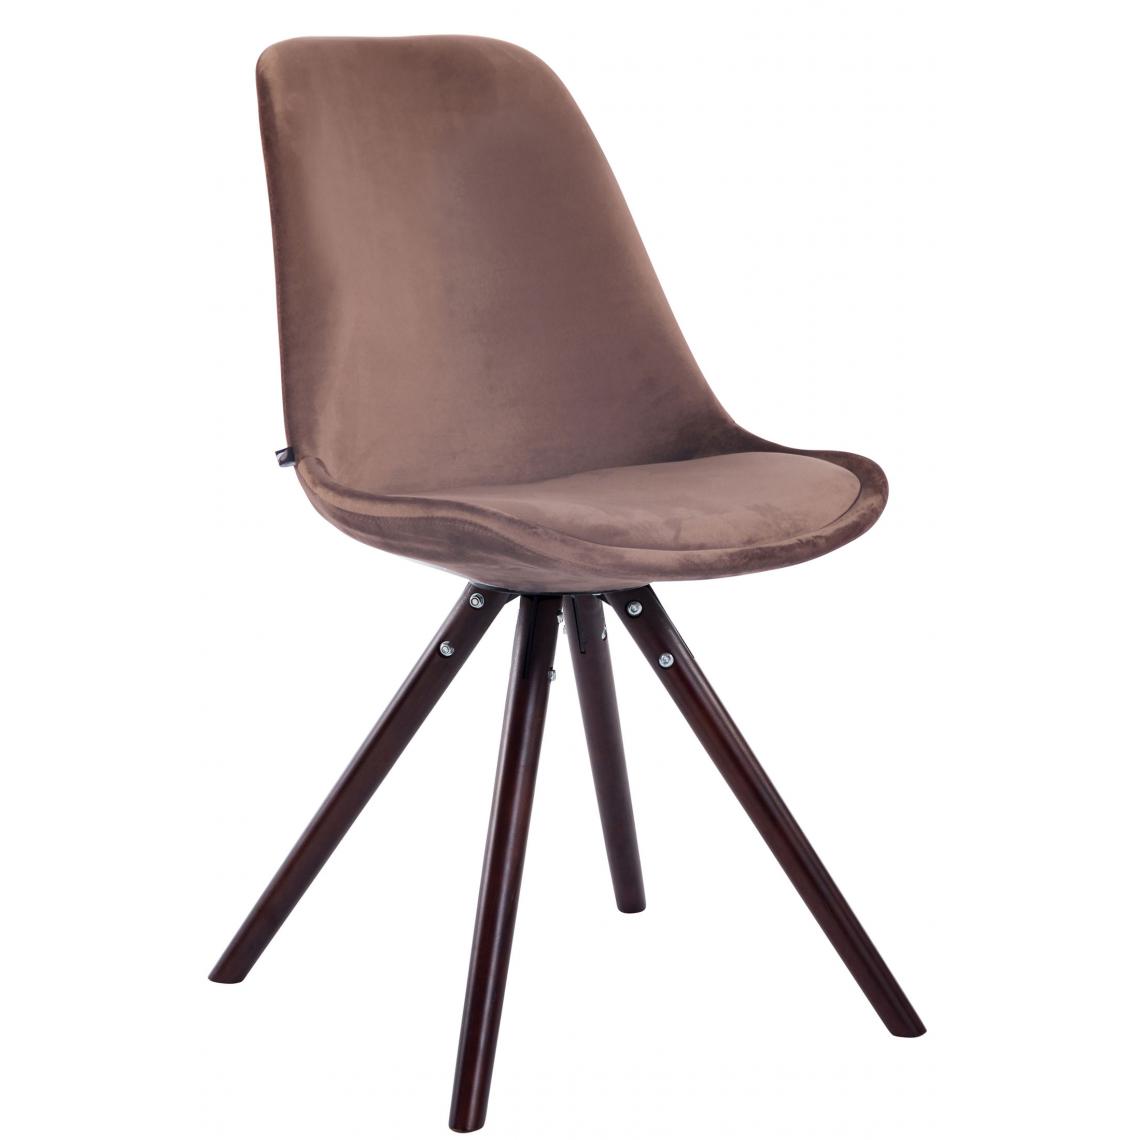 Icaverne - Superbe Chaise visiteur ronde en velours famille Katmandou cappuccino couleur marron - Chaises